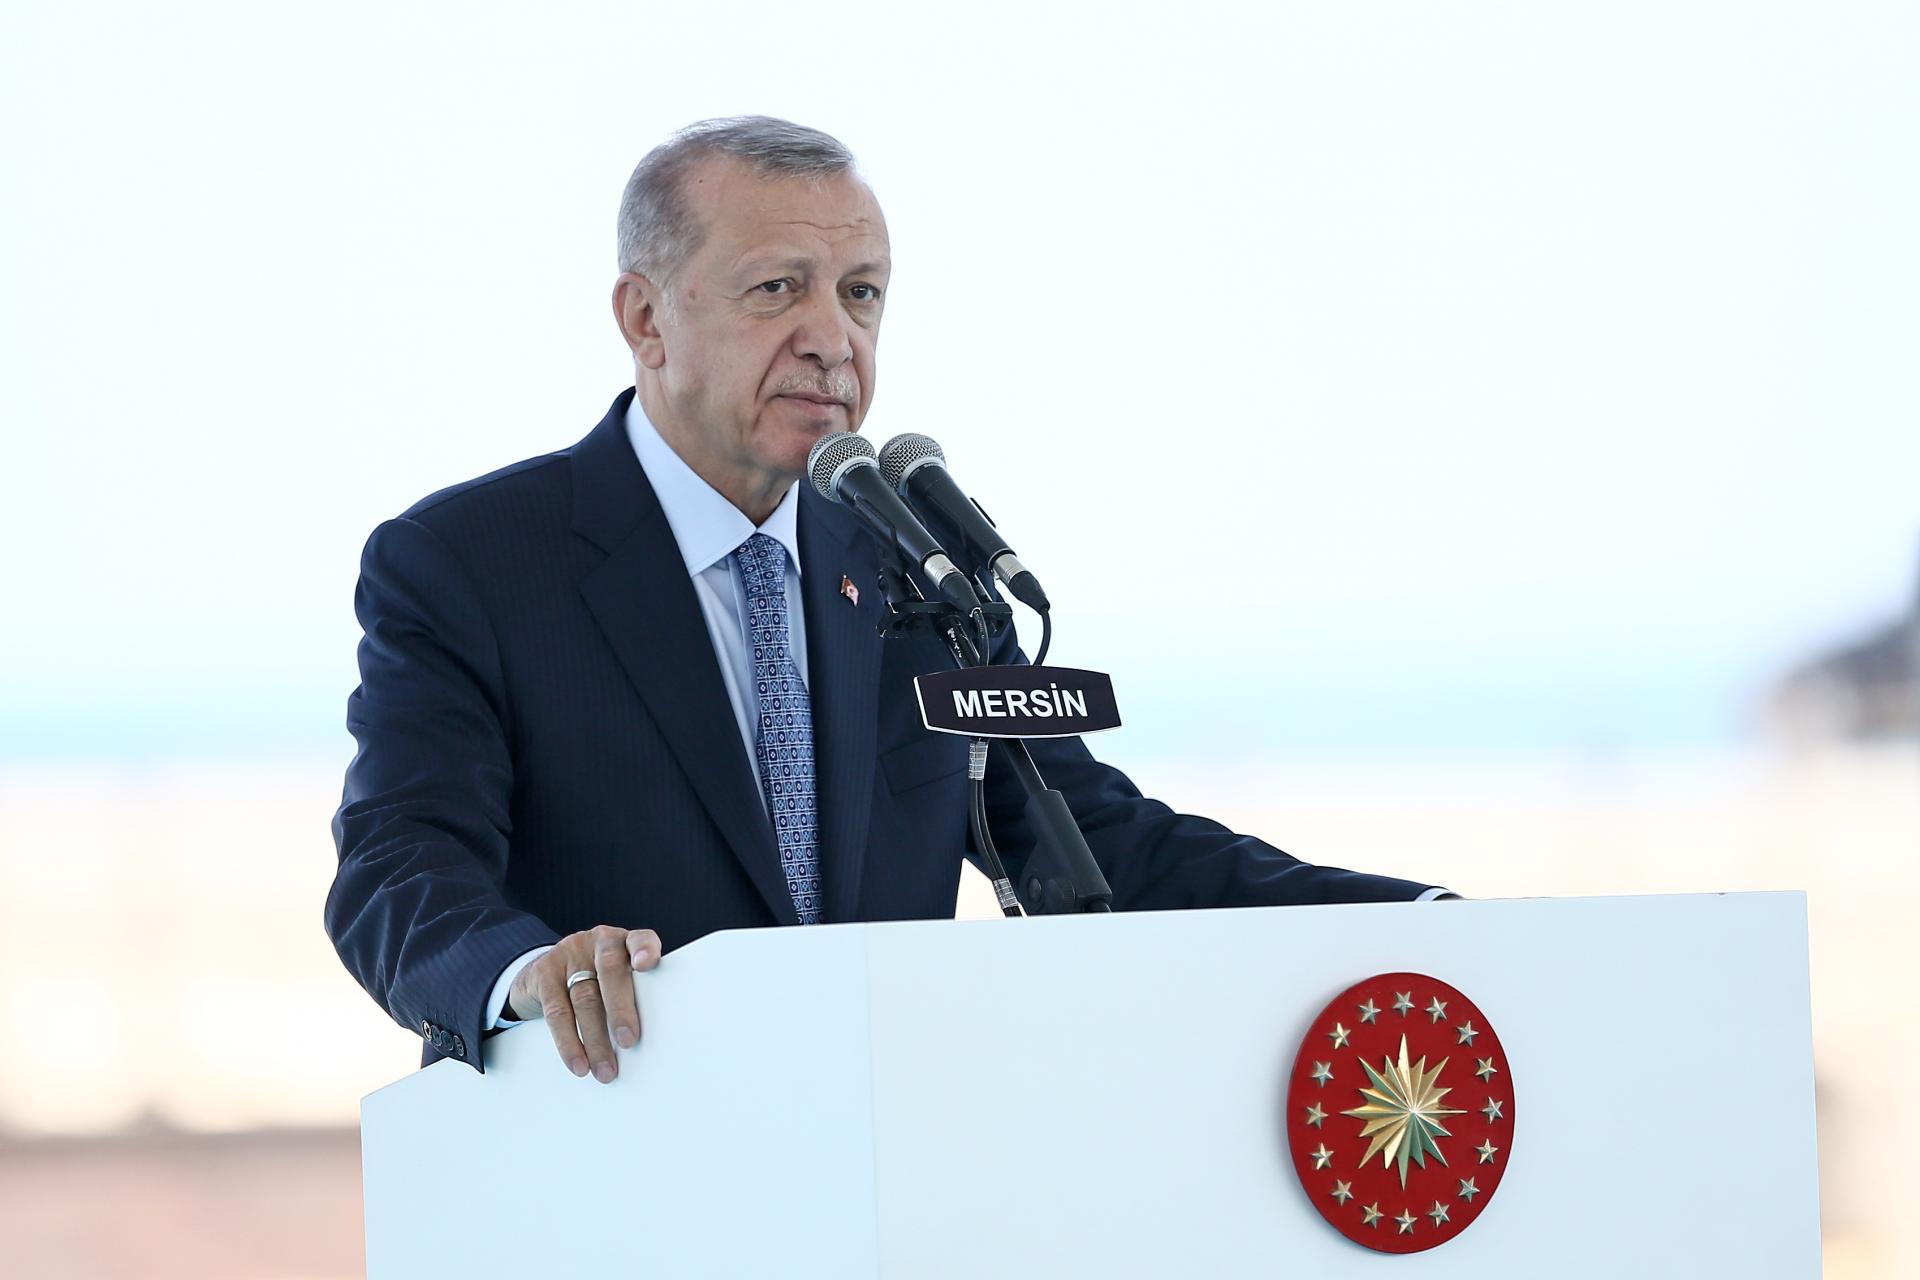 اردوغان: هئچ کیمدن ایجازه آلماغا احتیاجیمیز یوخدور